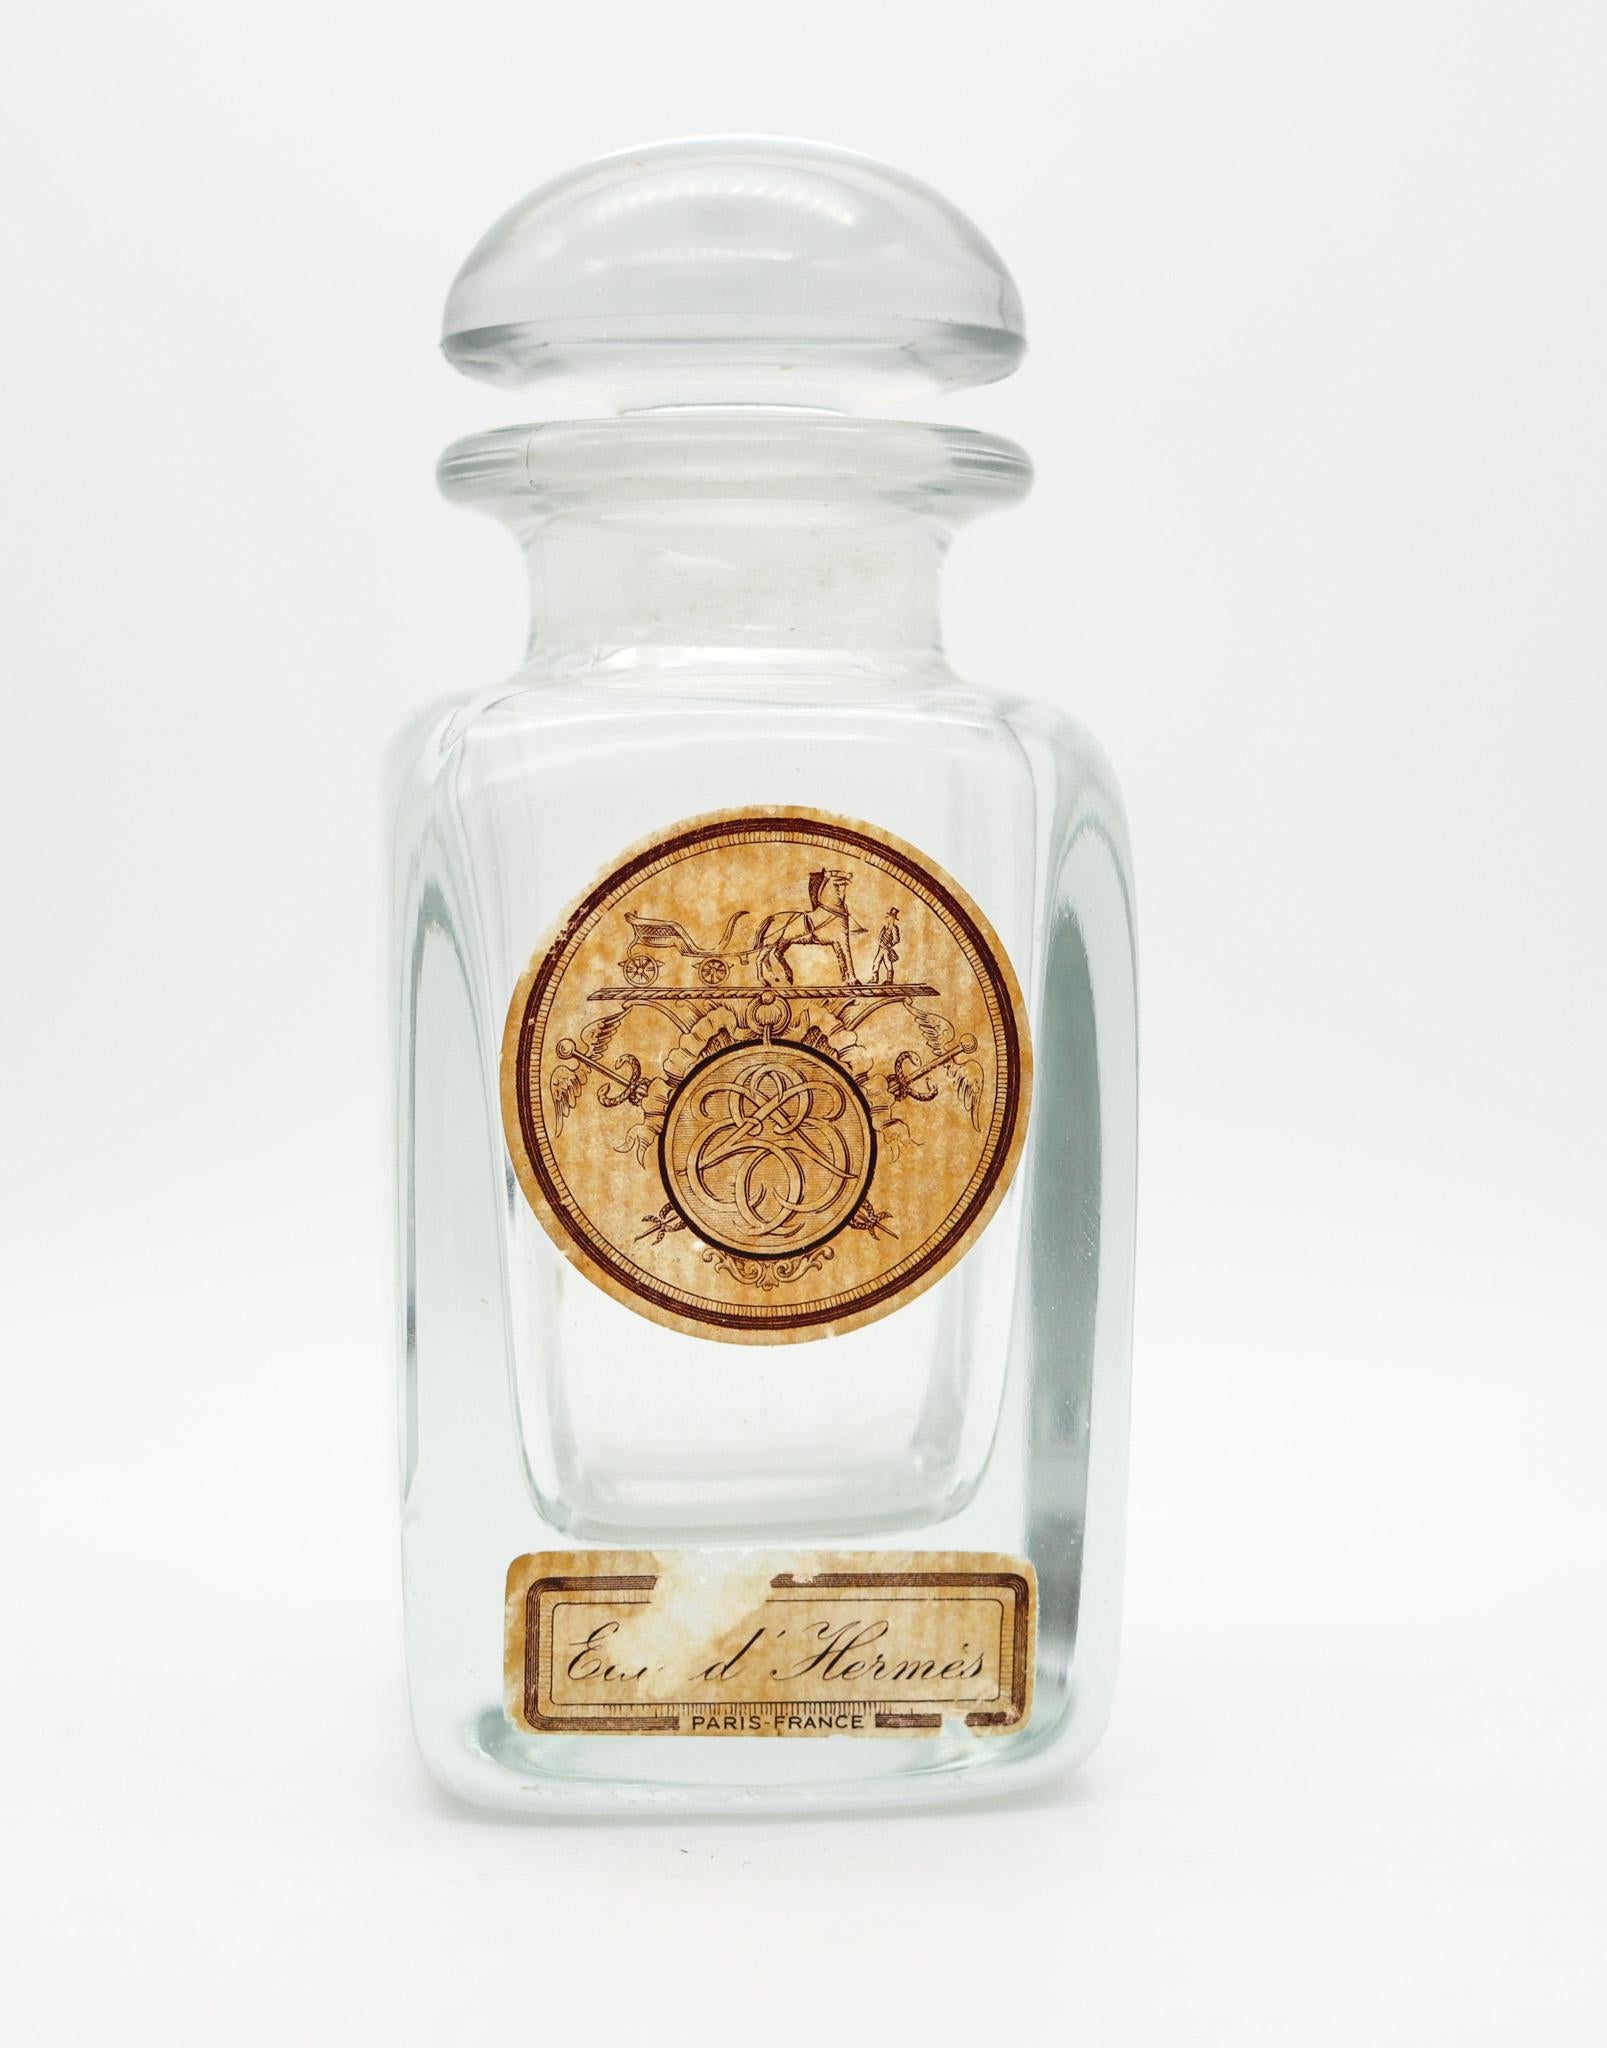 Vintage Parfümflasche von Hermes.

Estate und sehr frisch Jahrgang Eau d'Hermes Parfümflasche, in Paris Frankreich von der Modefirma Hermes gemacht, zurück in den 1950er Jahren. Diese große Flasche, wurde in sehr dick und fett gedrückt transparentem